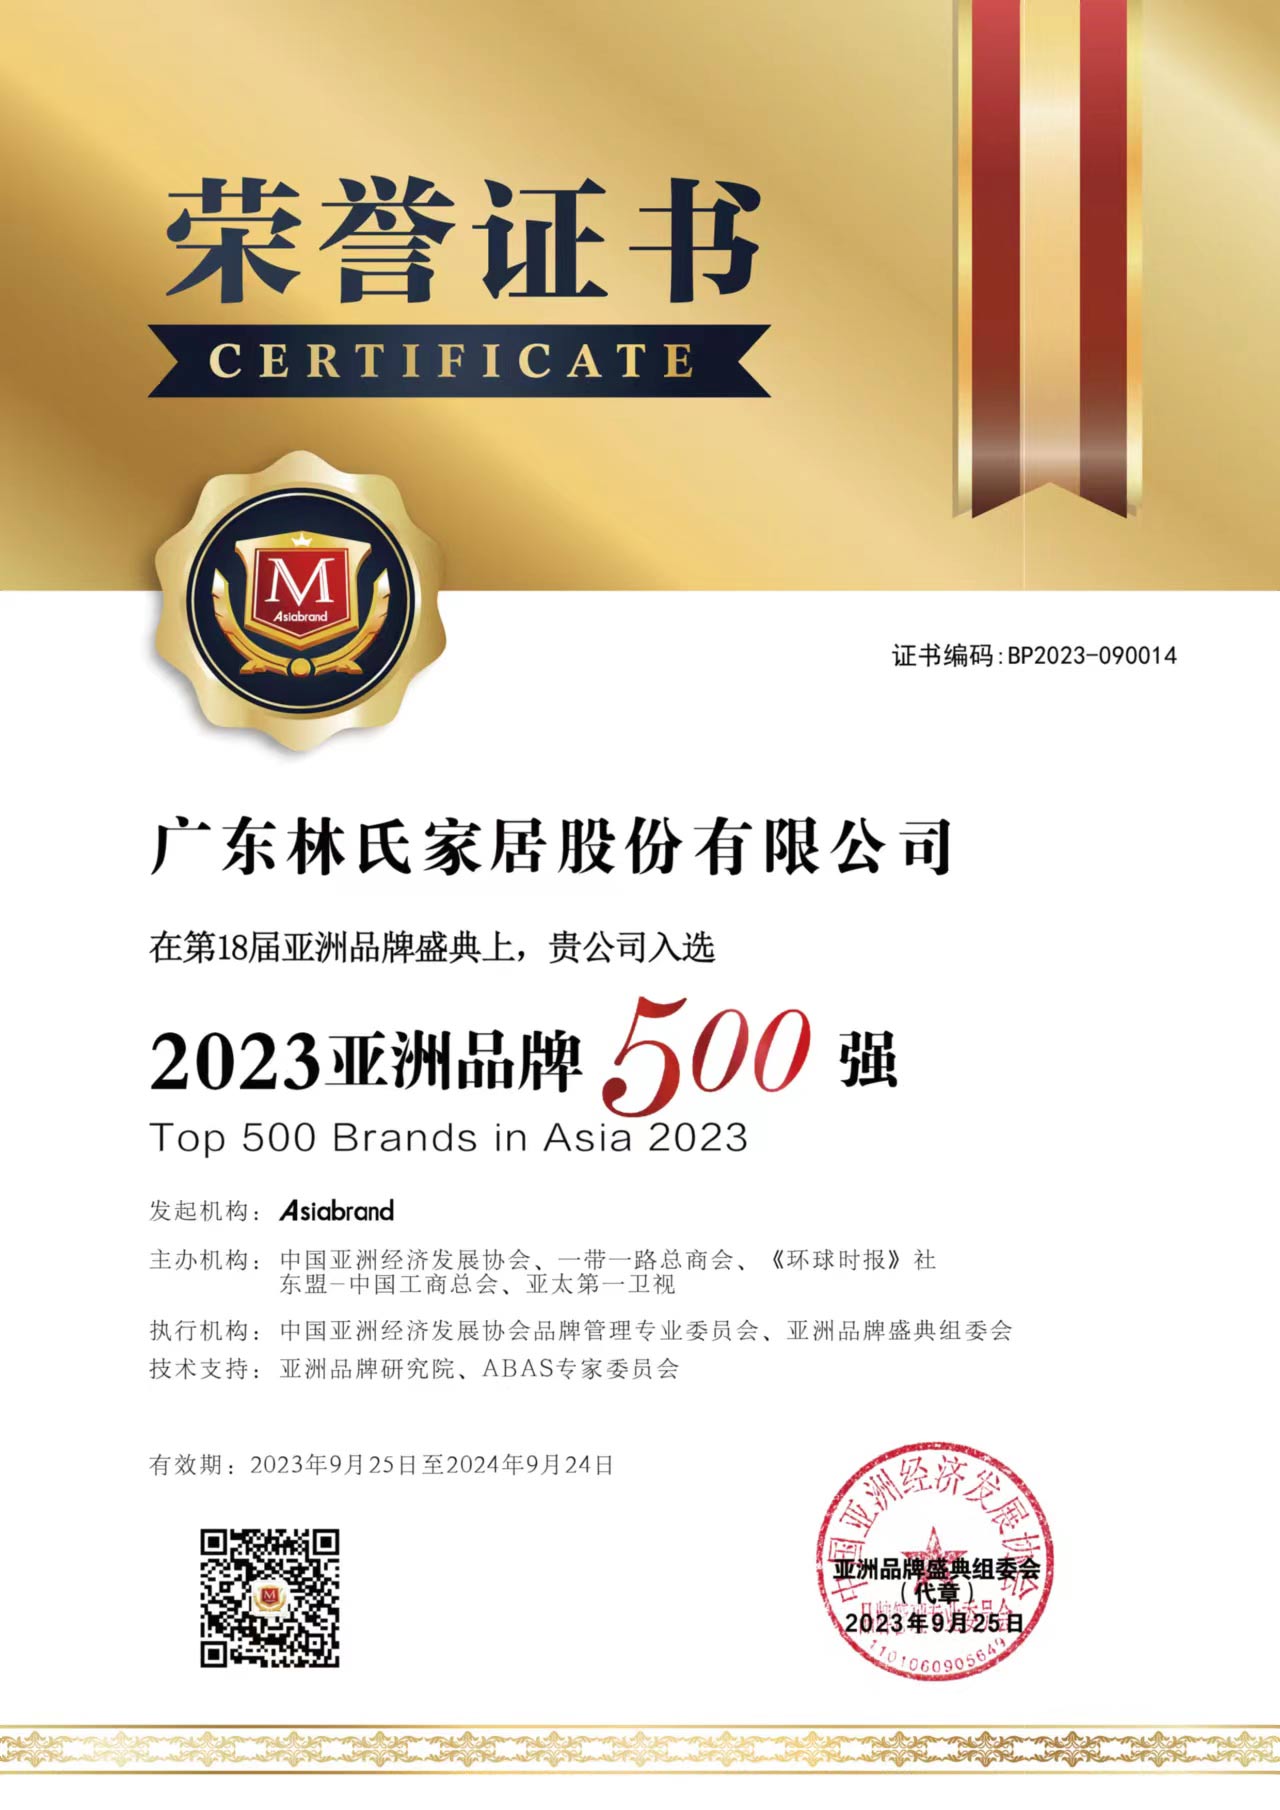 certificate 500 